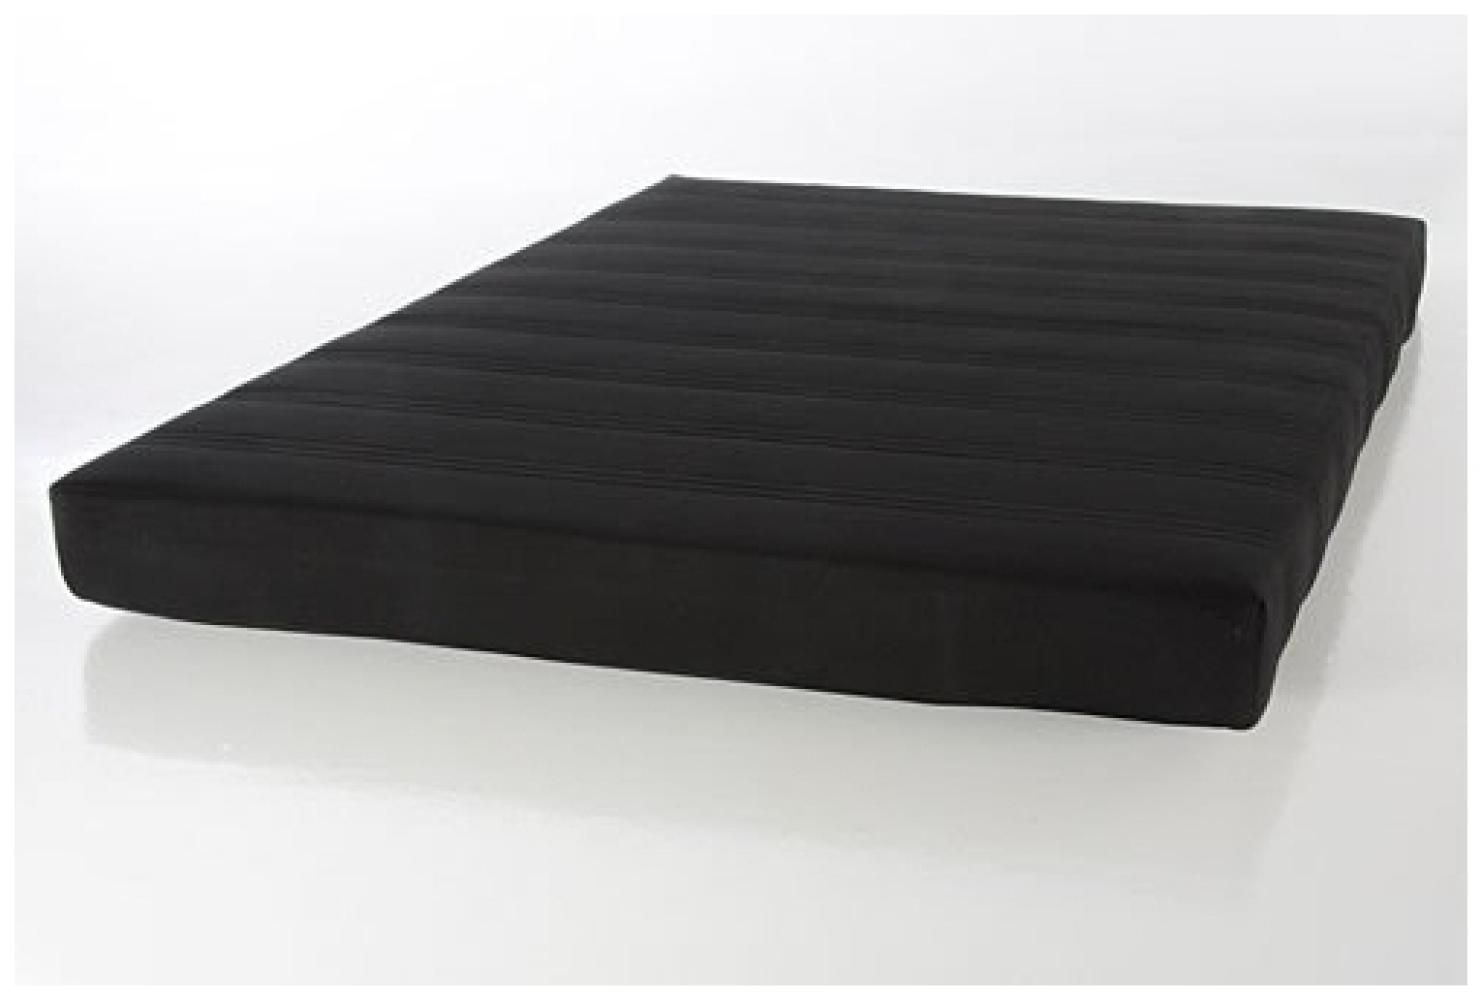 Rollflex 140 x 200 cm schwarz Federkernmatratze gerollt mit Bezugsstoff Bild 1